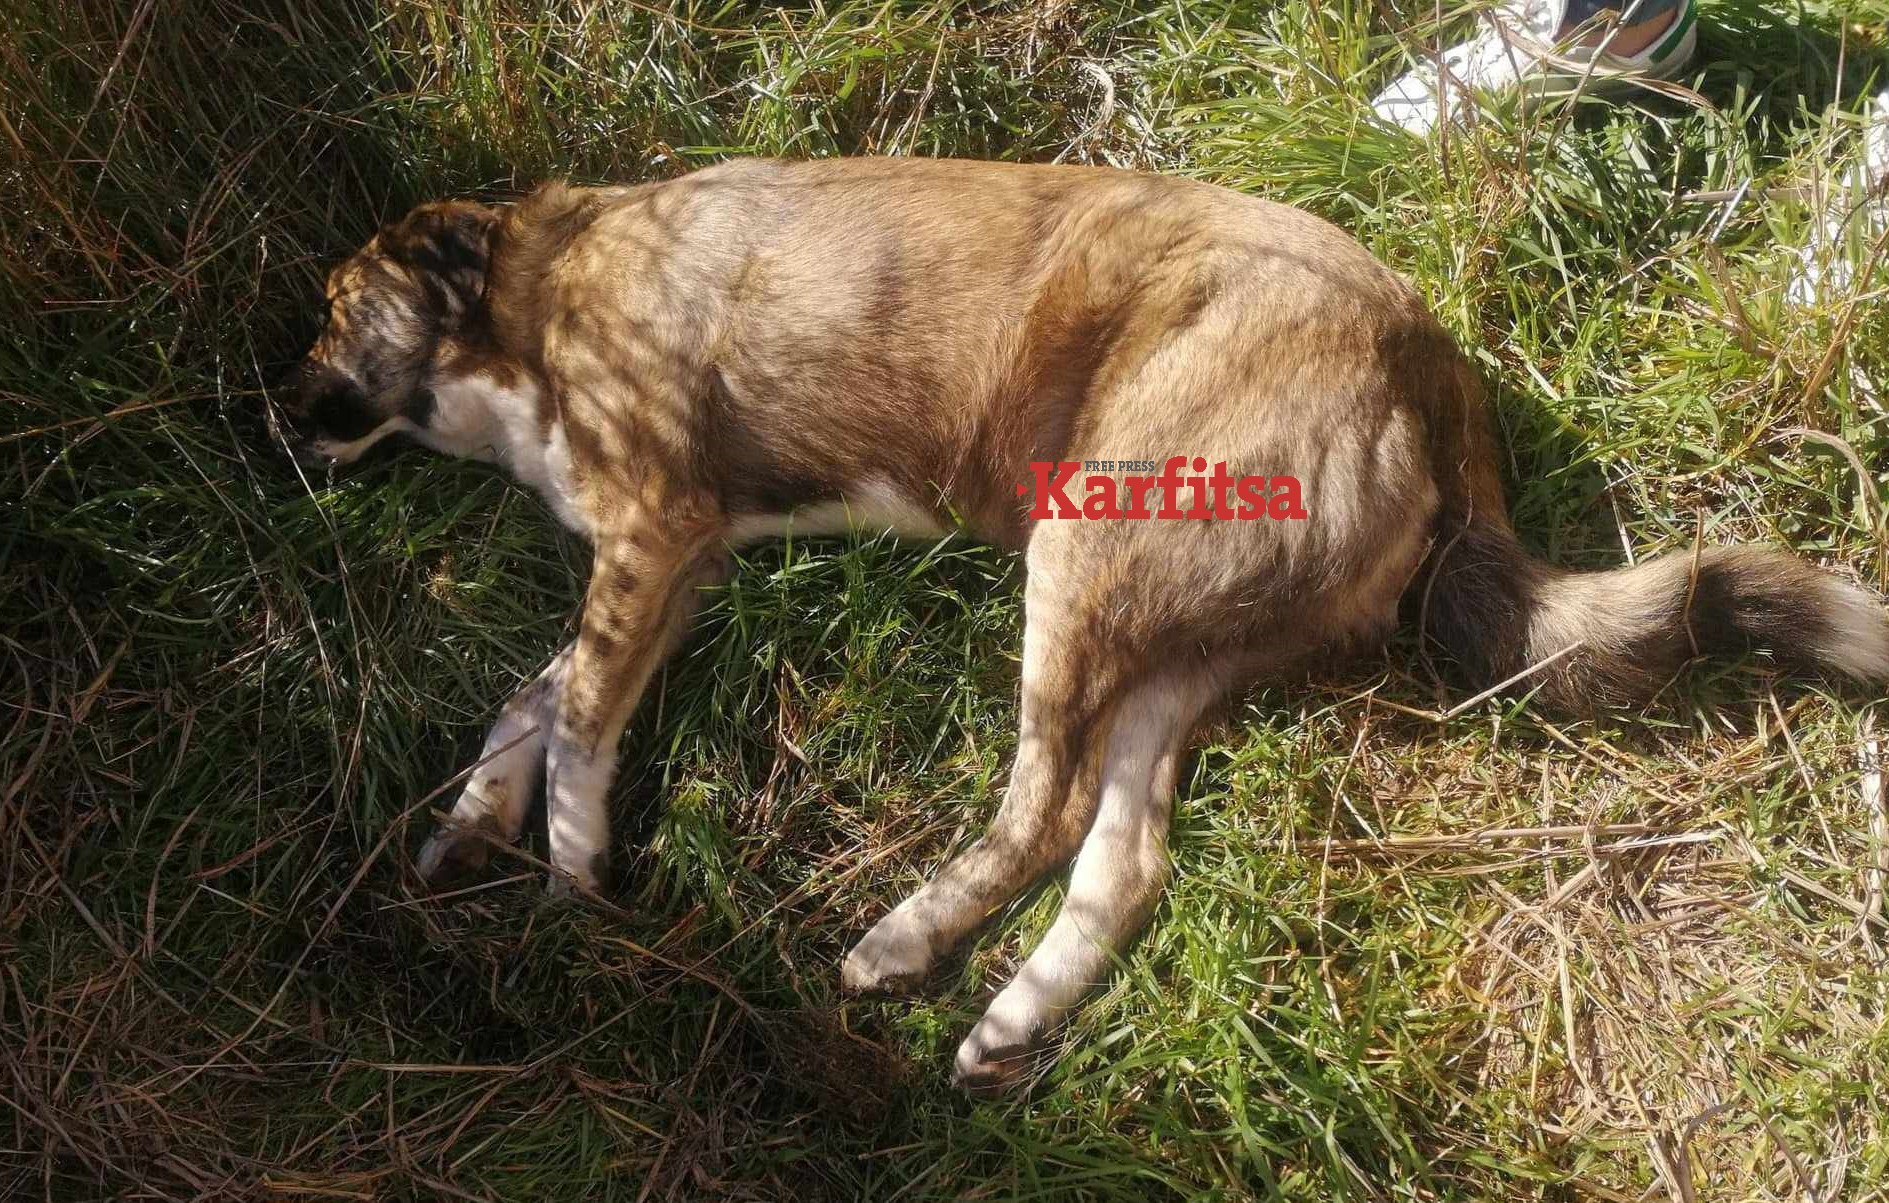 Φρίκη στην Κατερίνη: Πυροβόλησαν και σκότωσαν αδέσποτο σκύλο – Περισσότερα από 30 σκάγια στο σώμα του